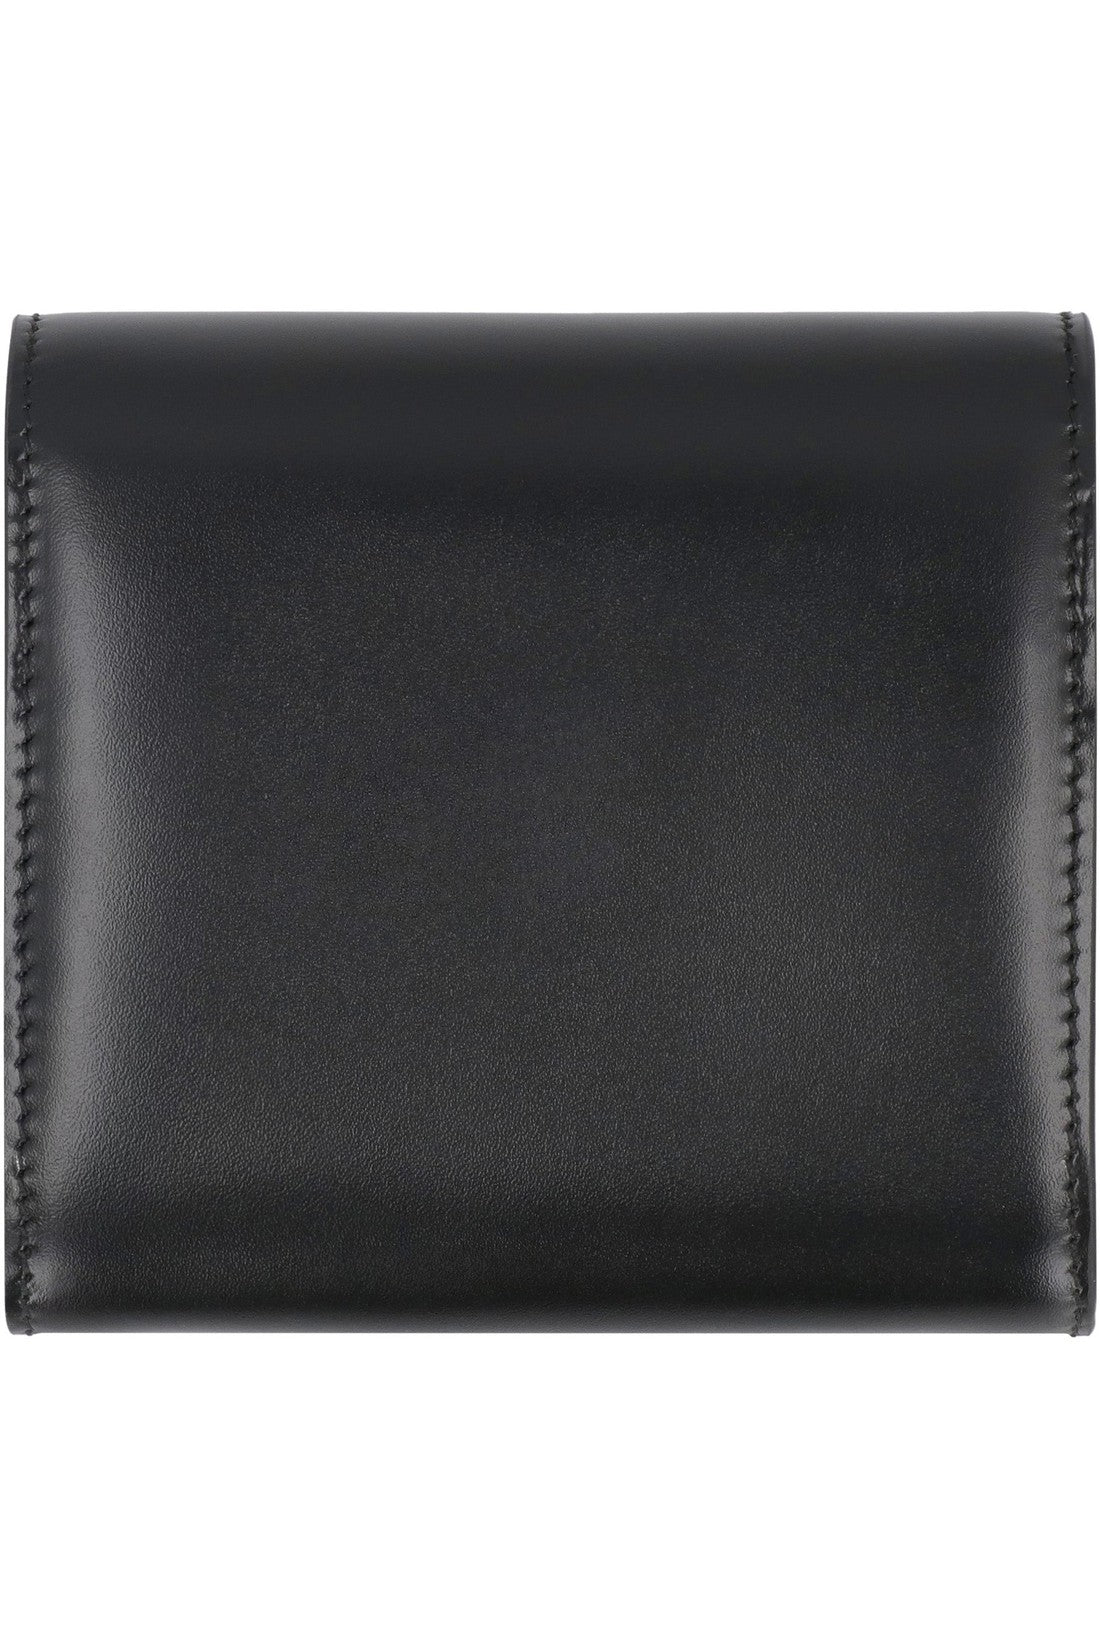 AMI PARIS-OUTLET-SALE-Leather wallet-ARCHIVIST